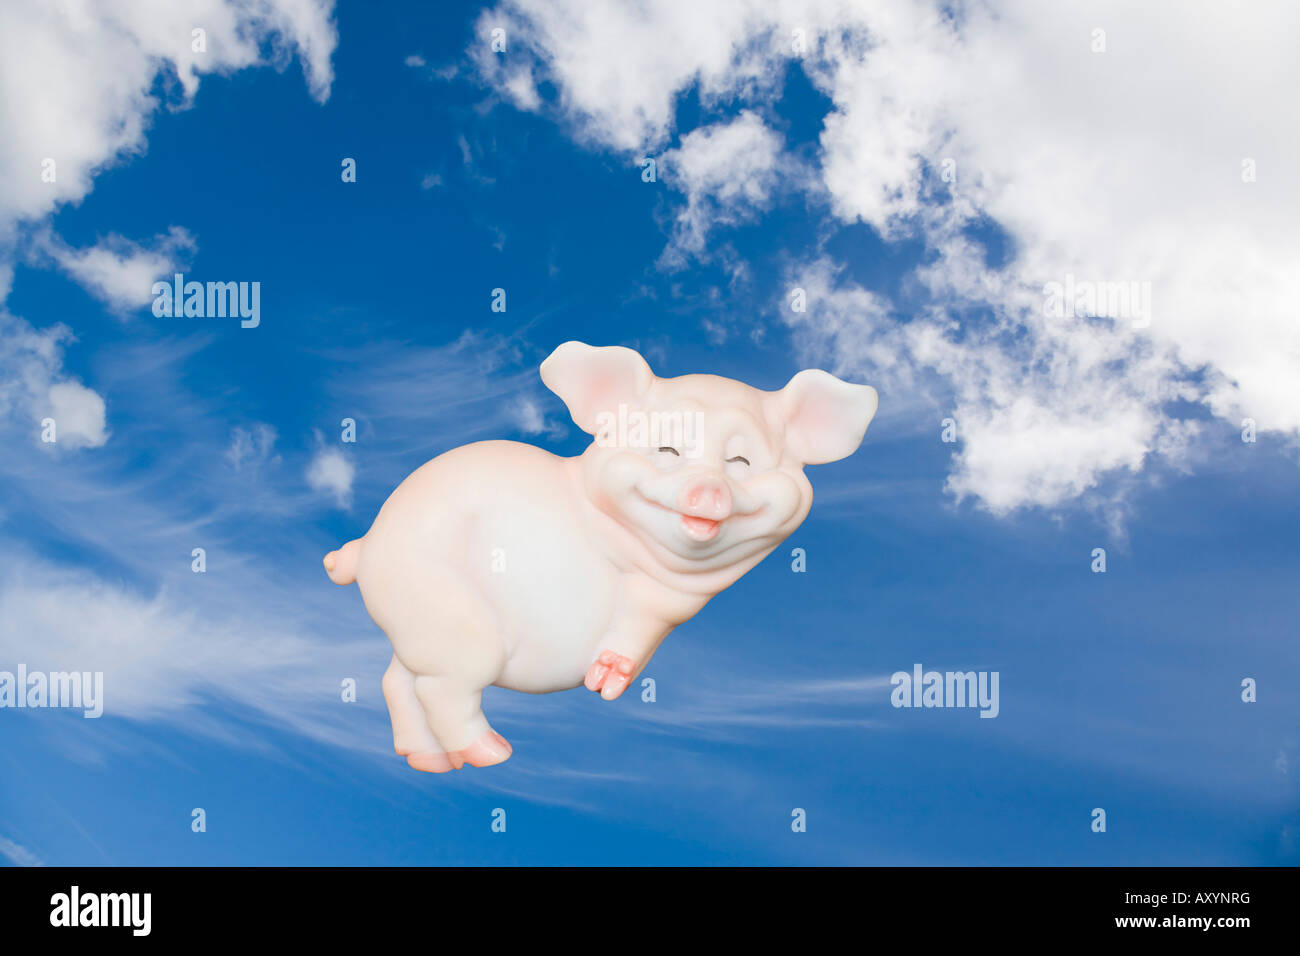 Suini potrebbero volare concetto frase cattura flying pig attraverso il cielo blu con nuvola bianca Foto Stock